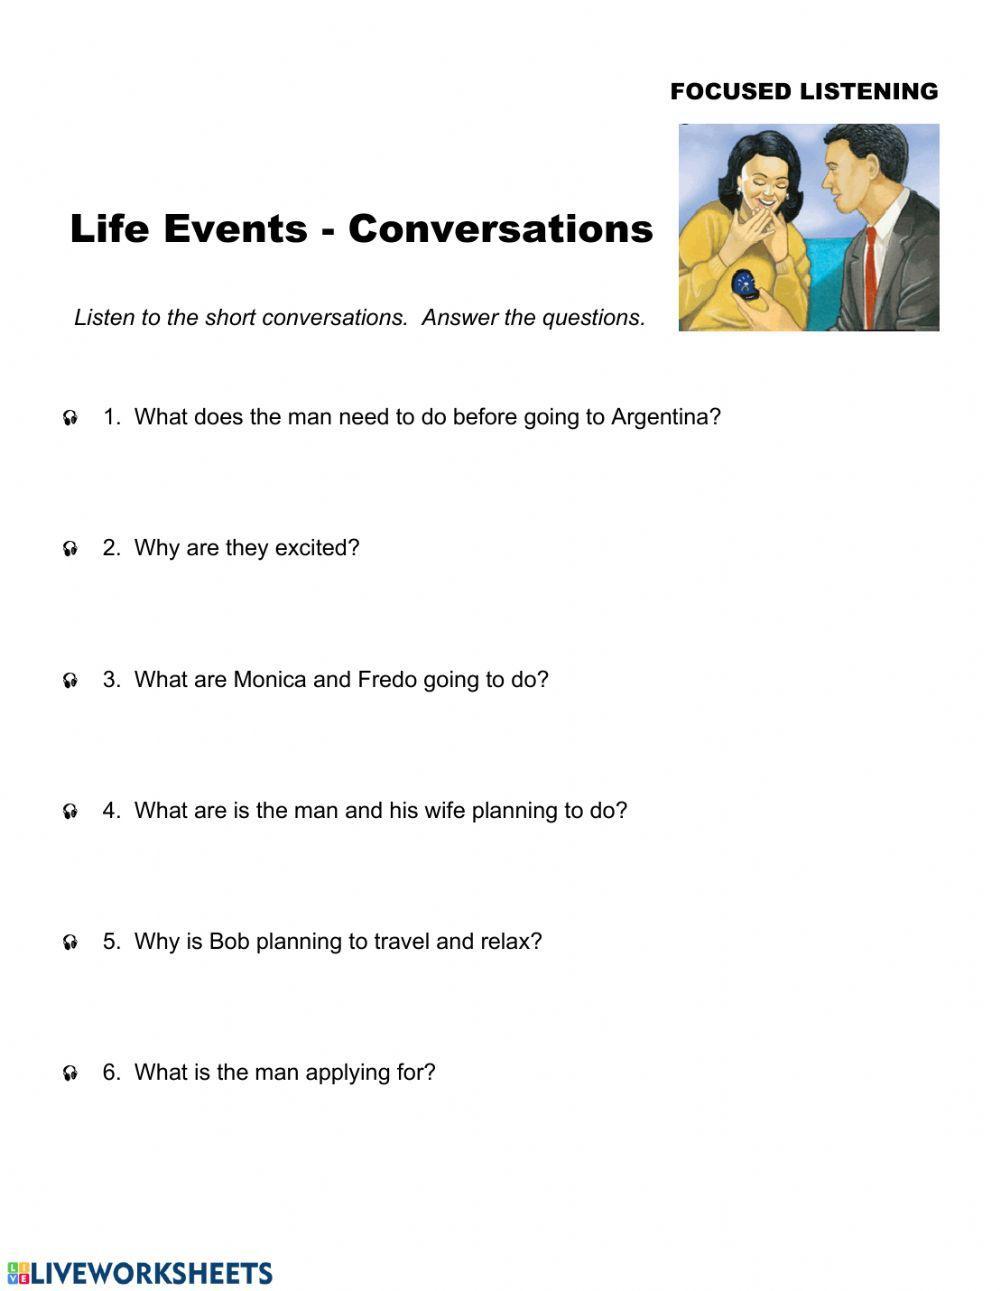 Life Events - Conversations